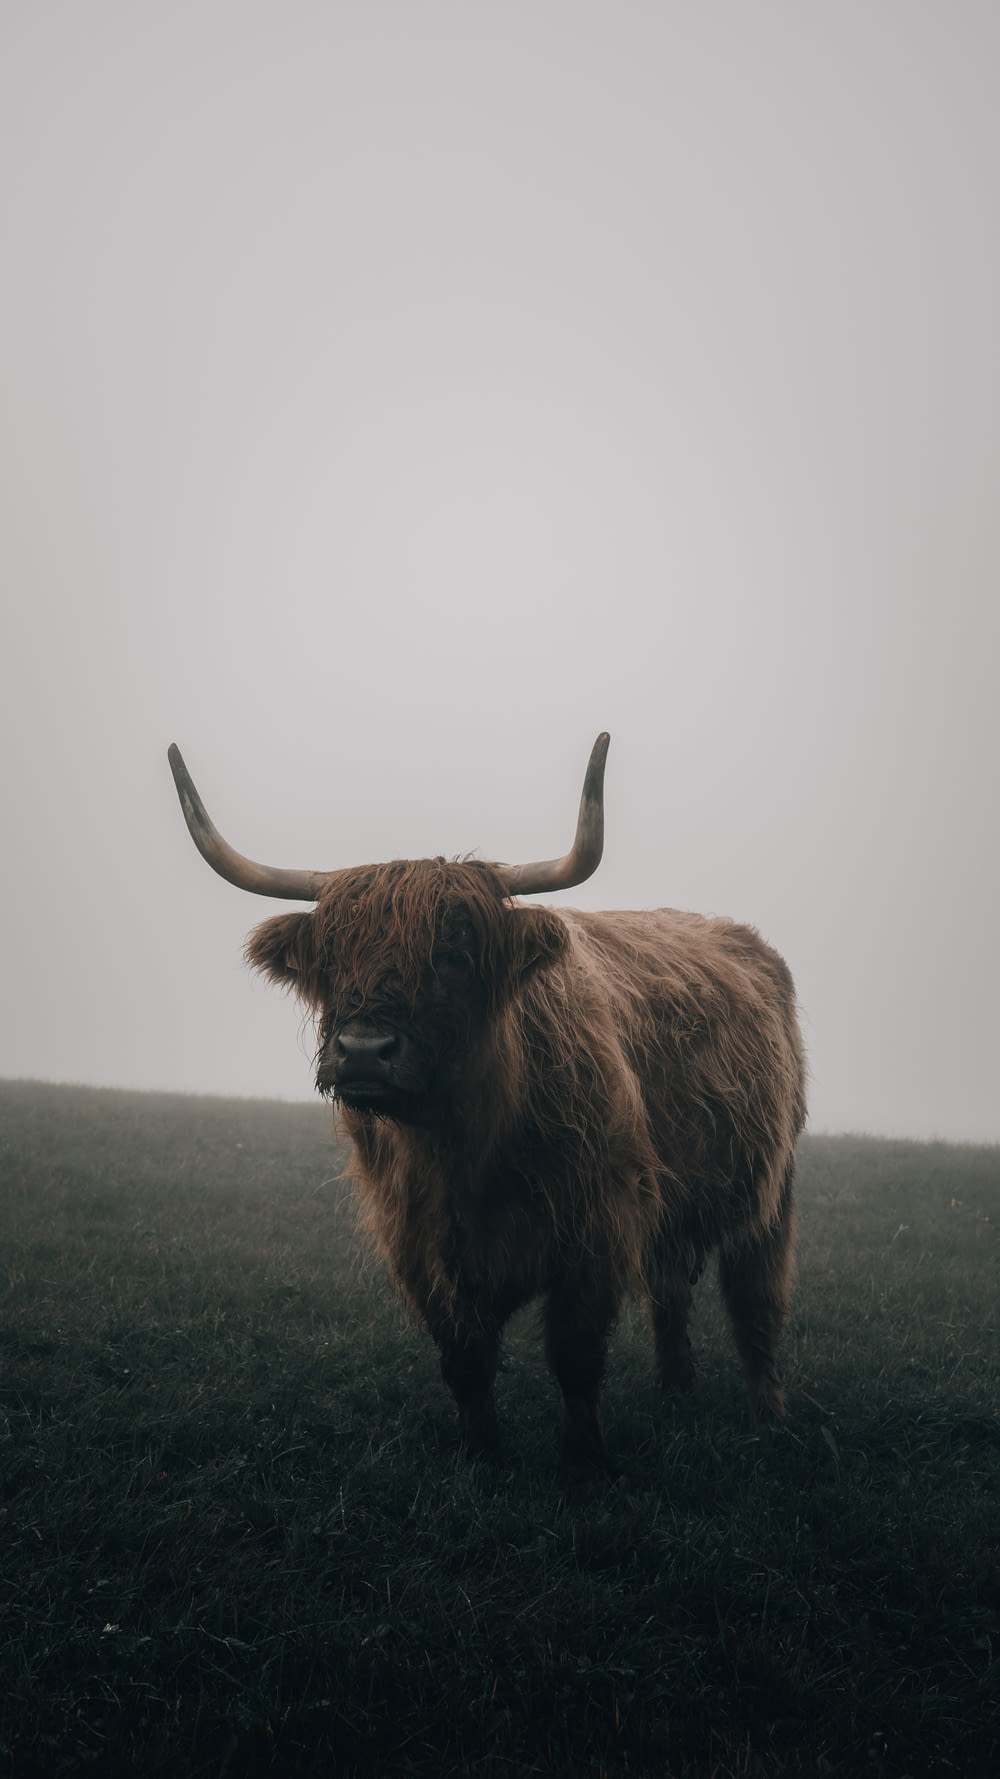 a long horn bull standing in a field